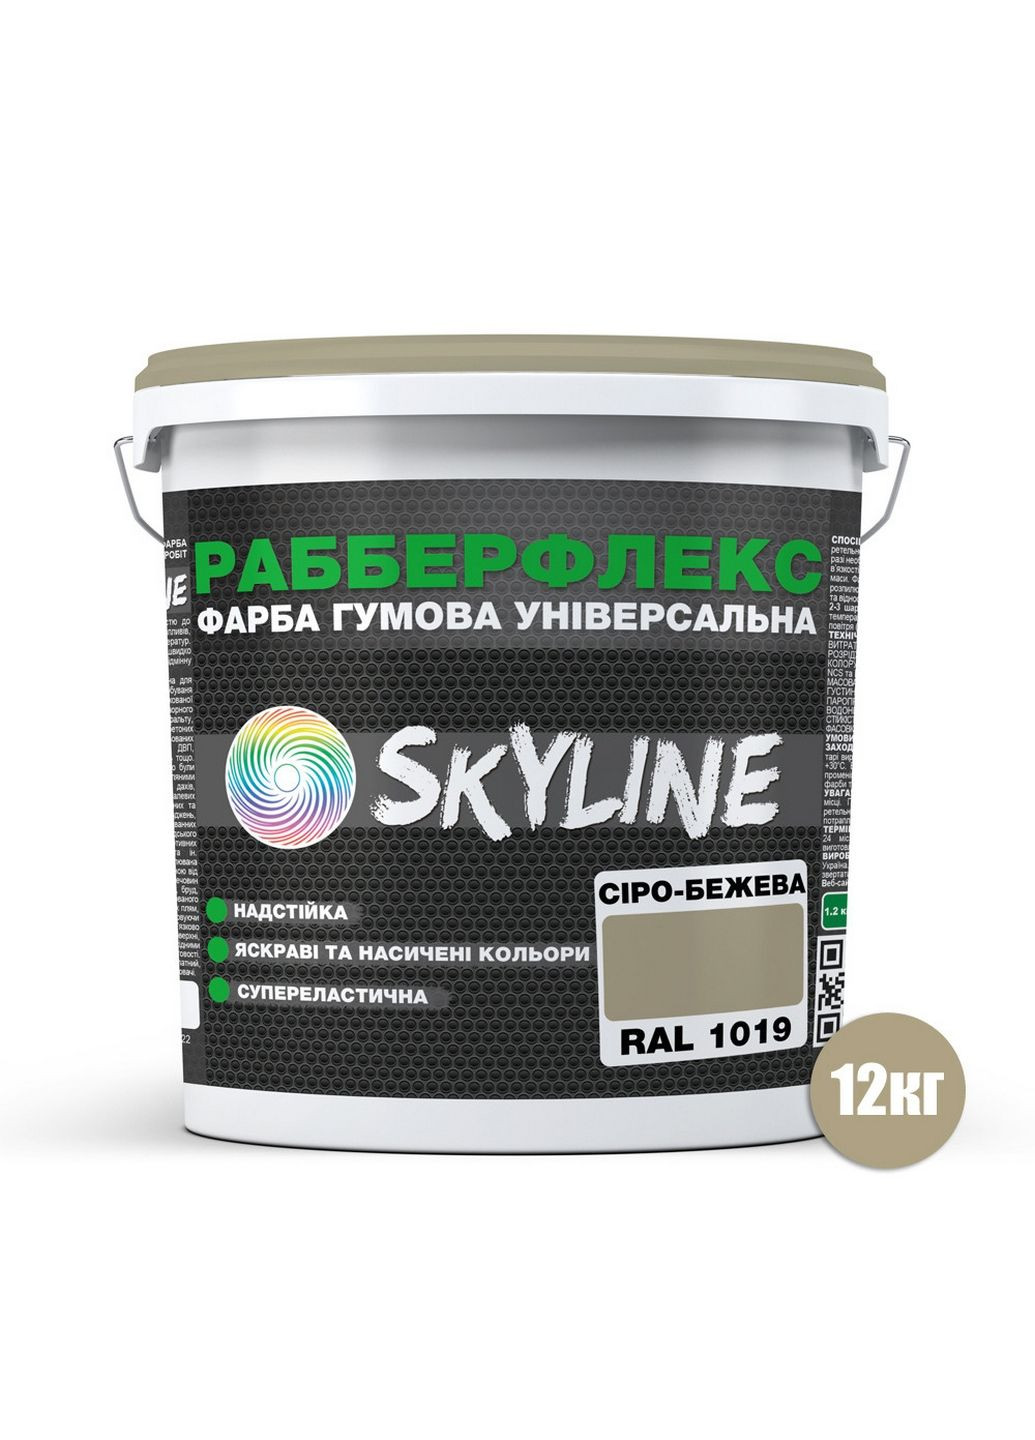 Надстійка фарба гумова супереластична «РабберФлекс» 12 кг SkyLine (289367737)